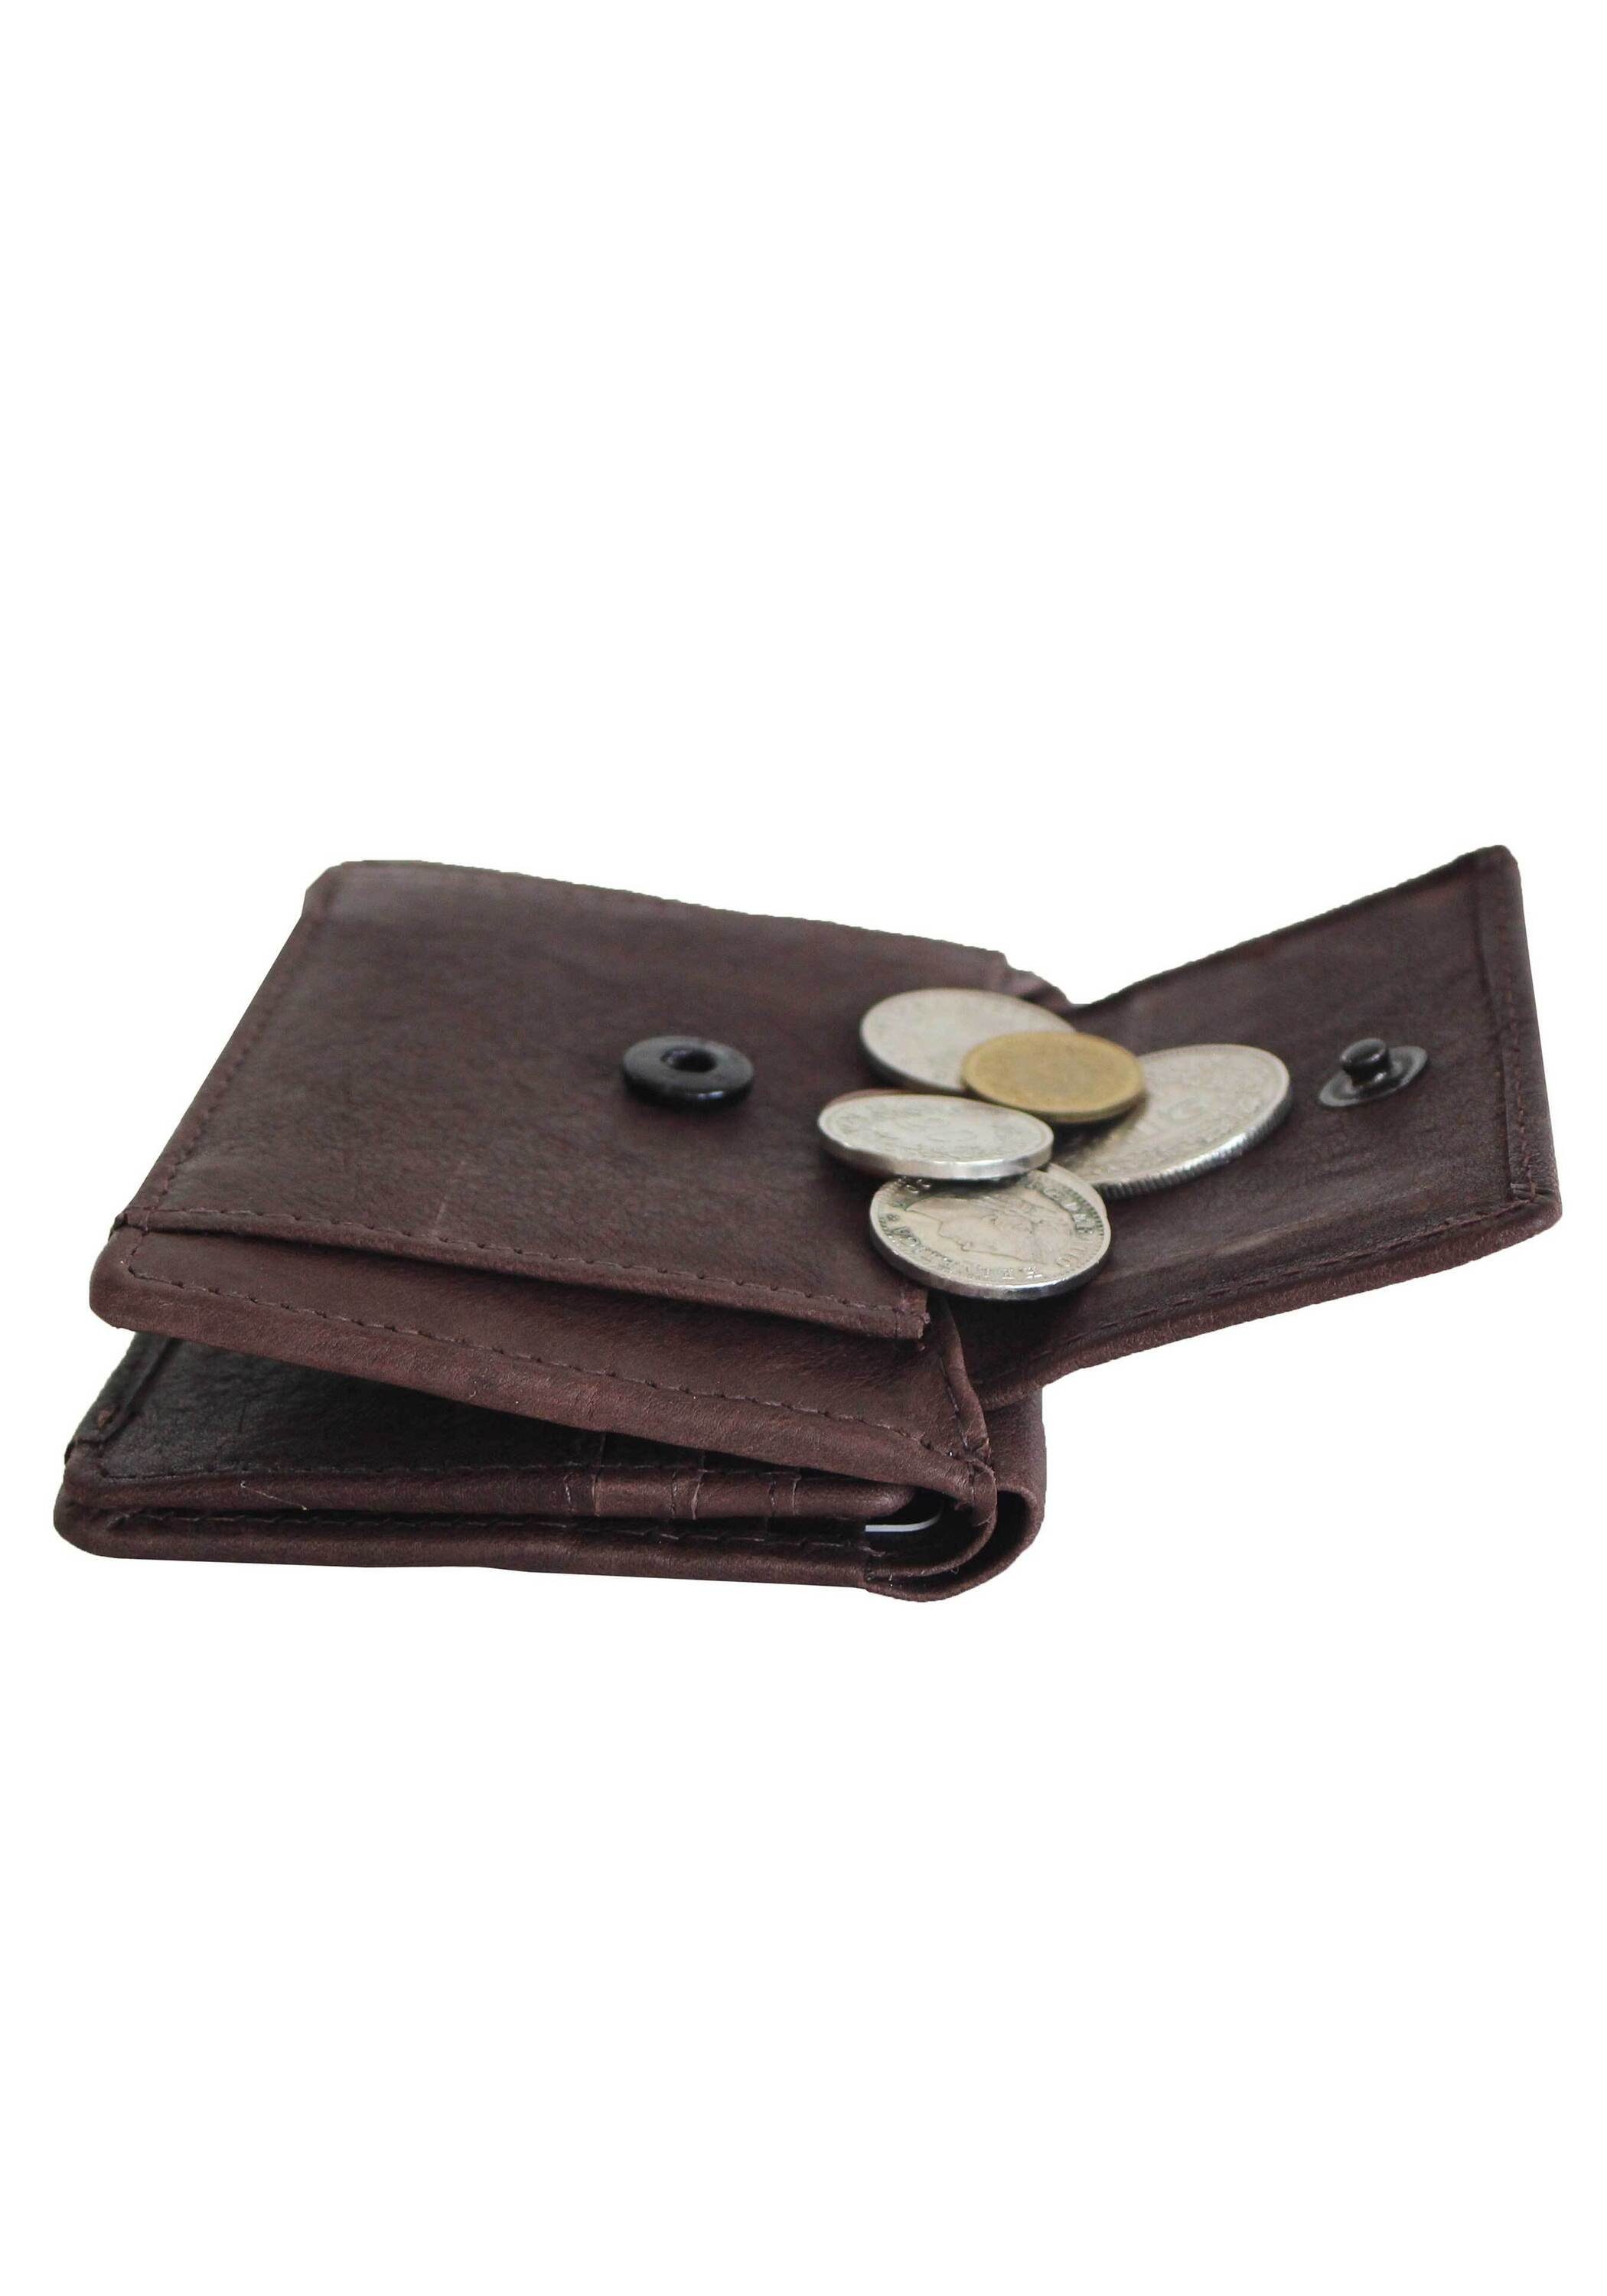 Barcelona Mini 1, Margelisch brown fairer RFID Schutz Produktion mit und aus Geldbörse